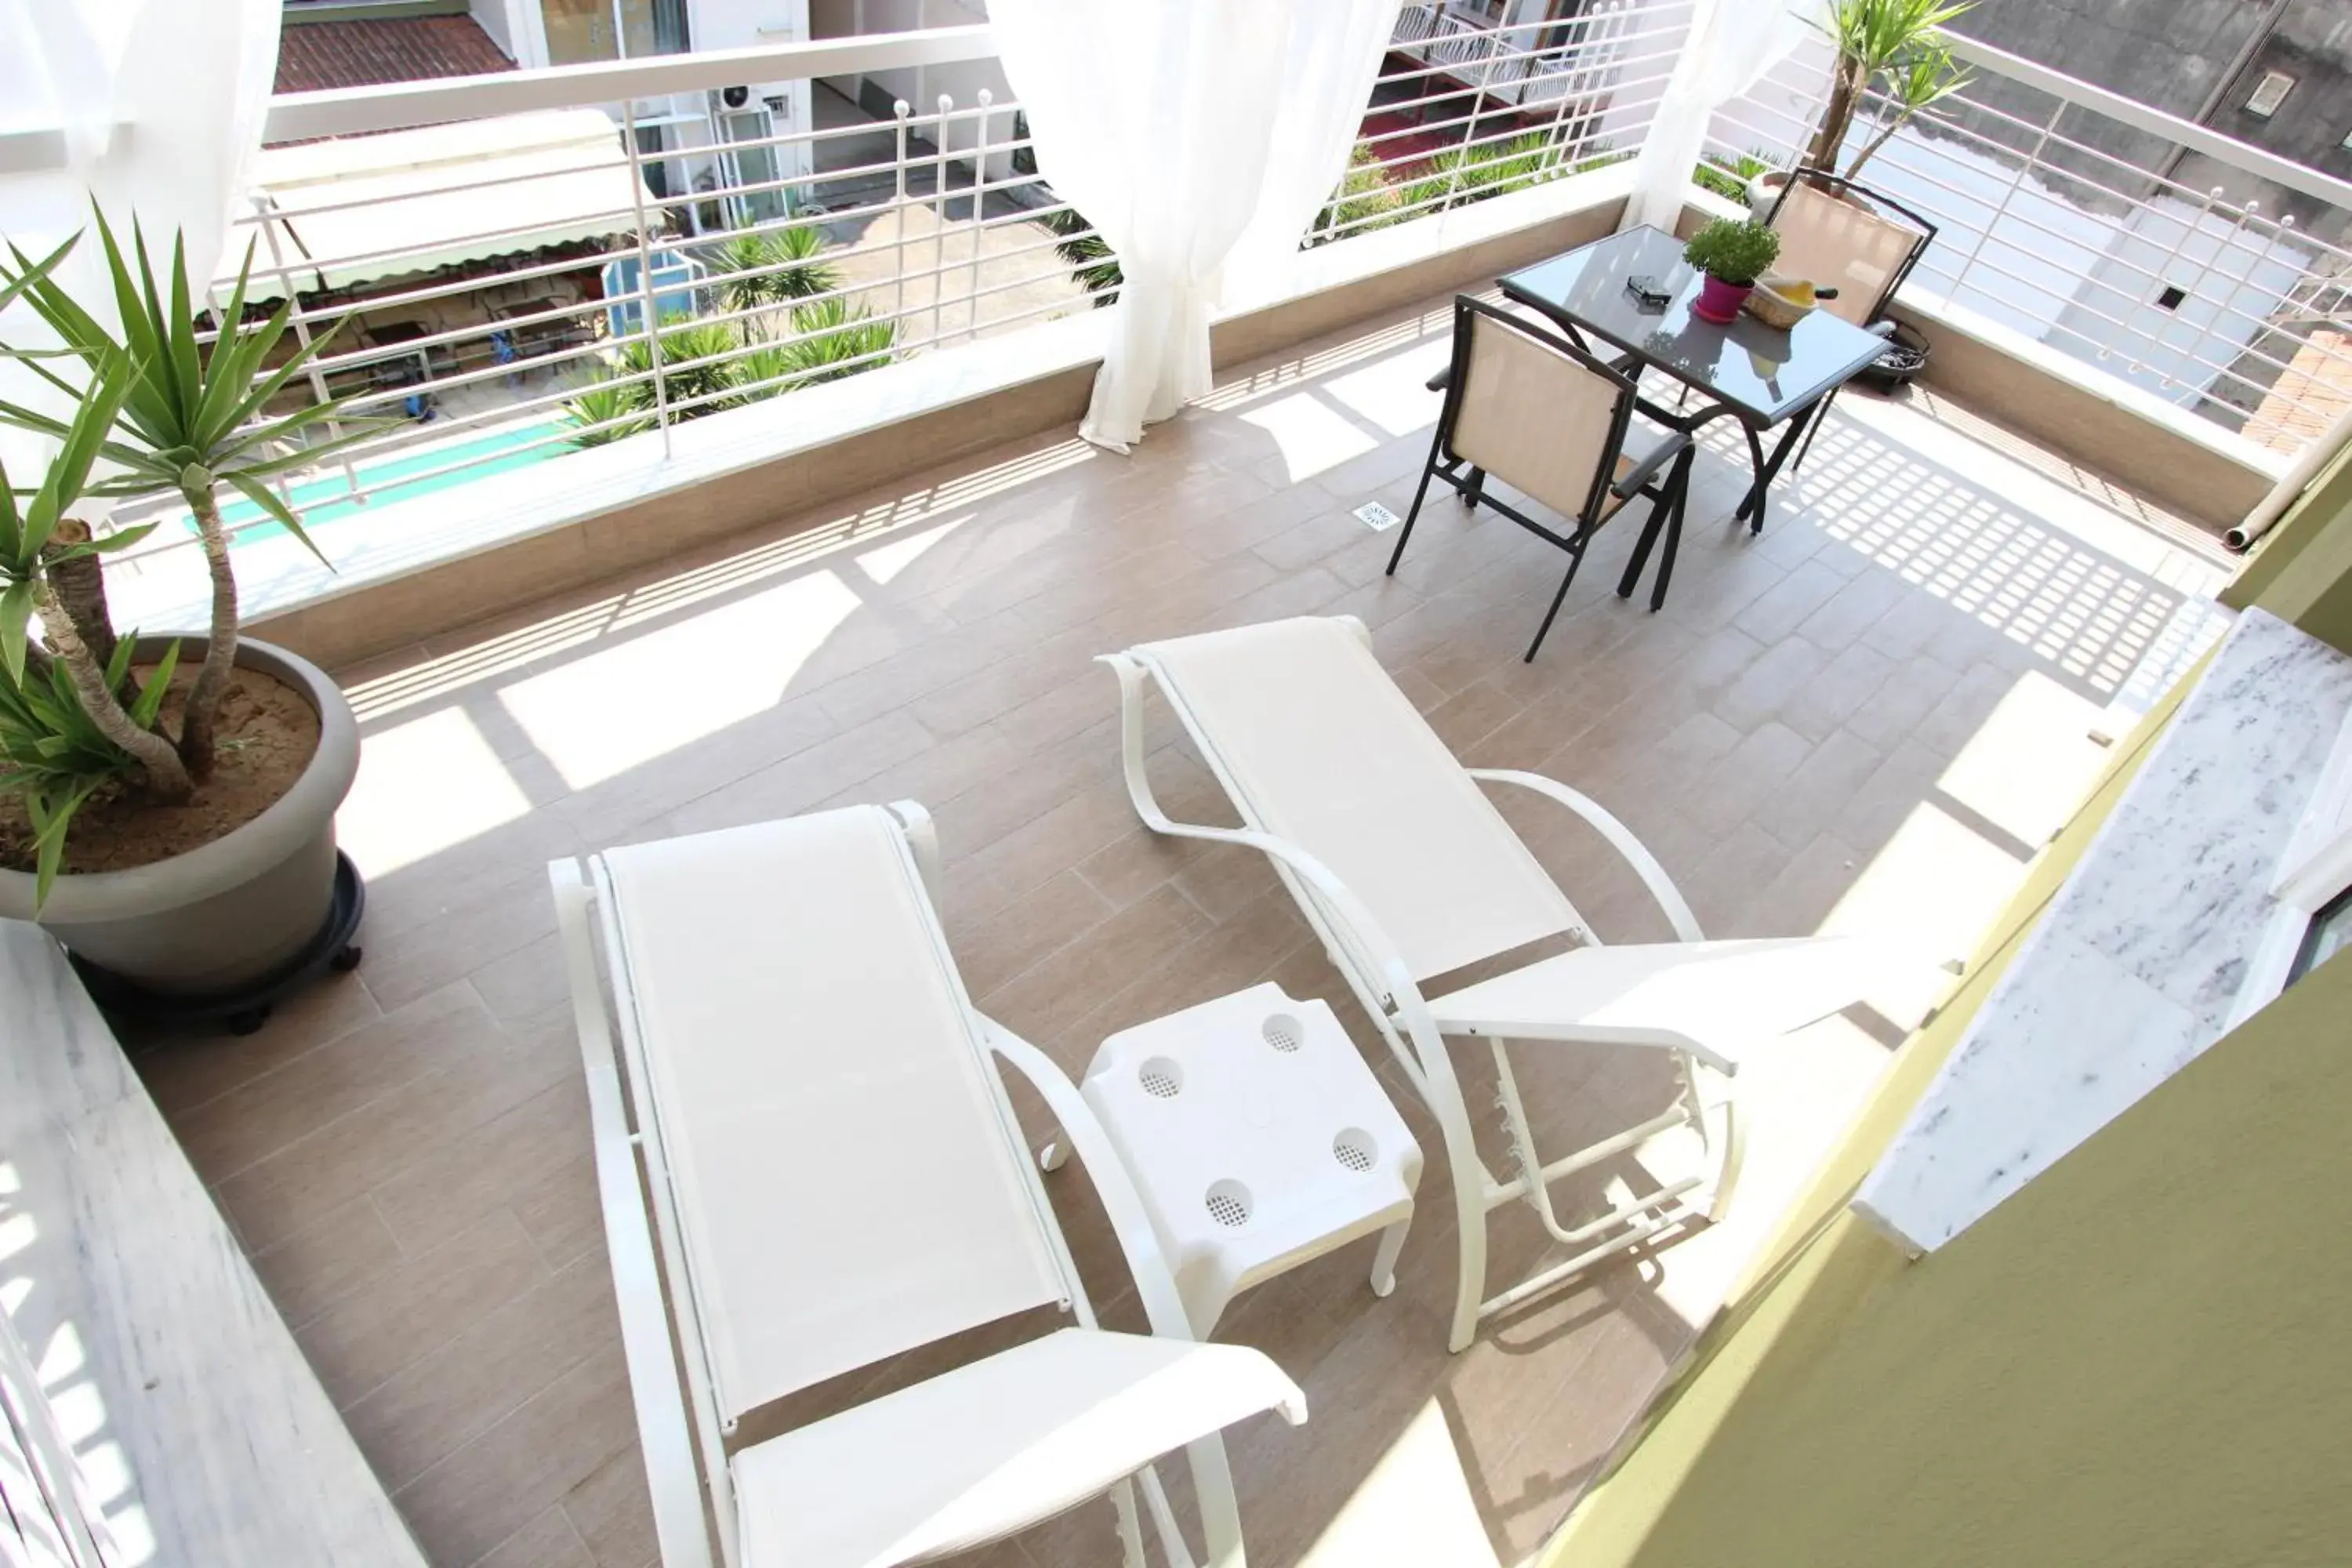 Balcony/Terrace, Patio/Outdoor Area in Hotel Mallas